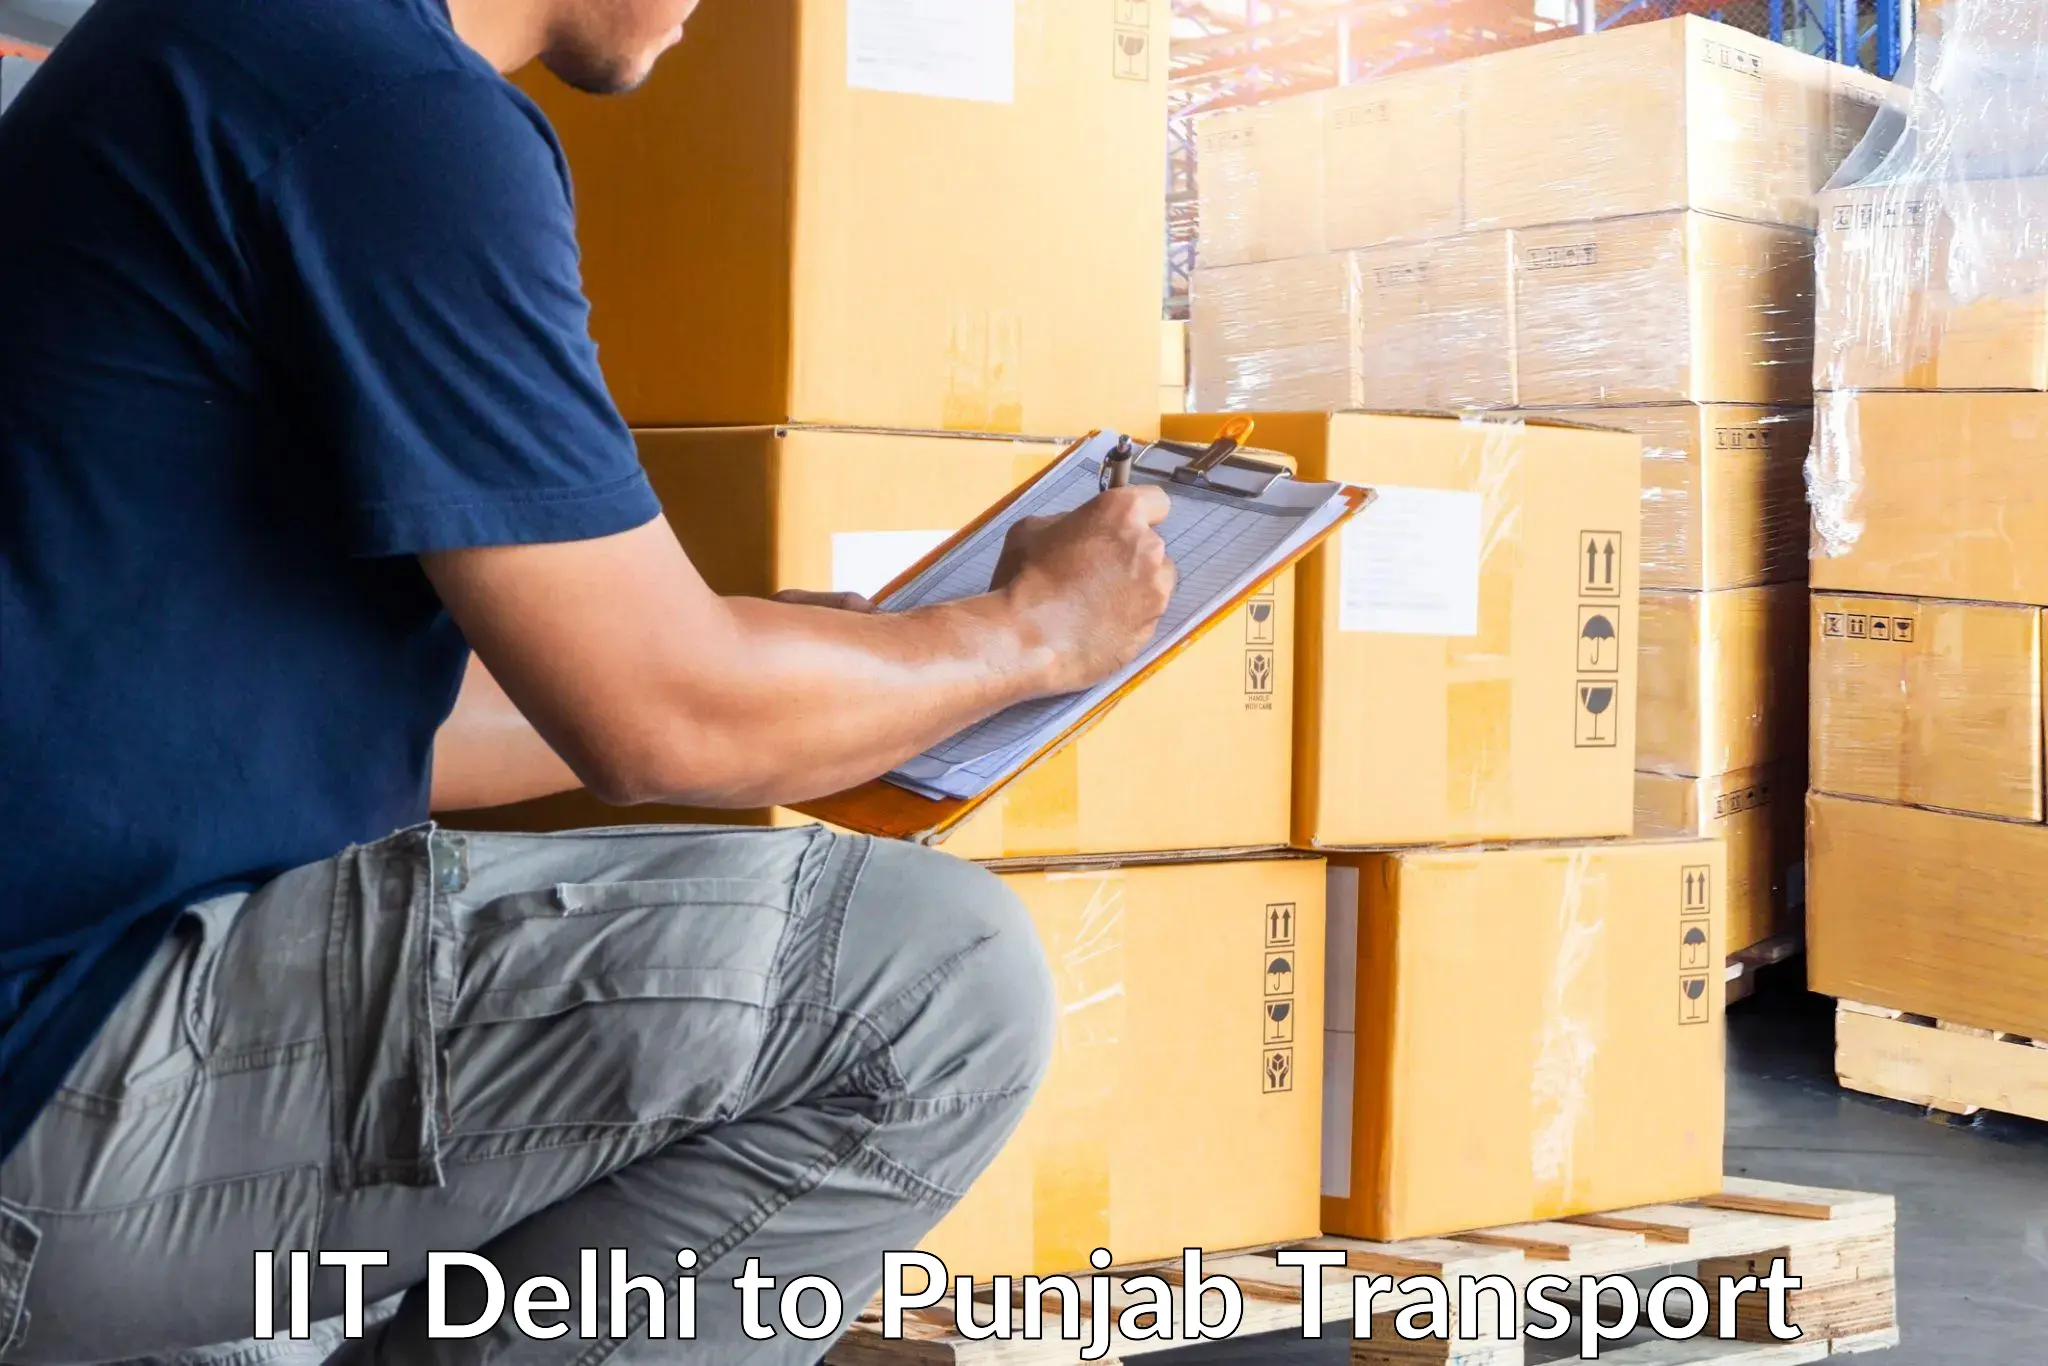 Land transport services IIT Delhi to Gurdaspur